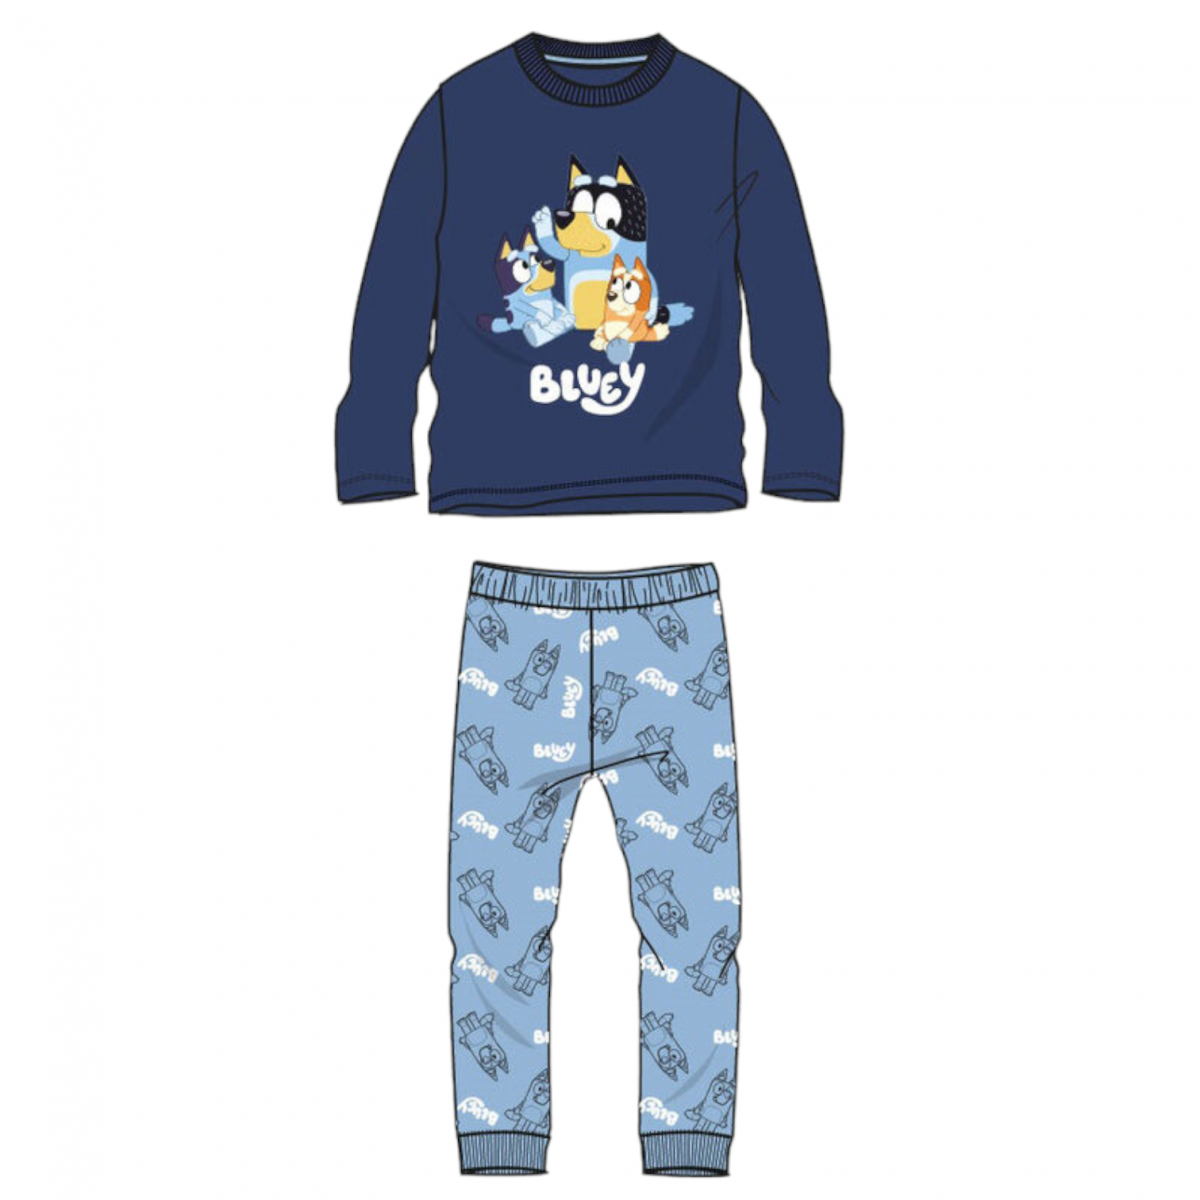 Pijama Bluey algodón. Tienda online moda infantil y complementos.